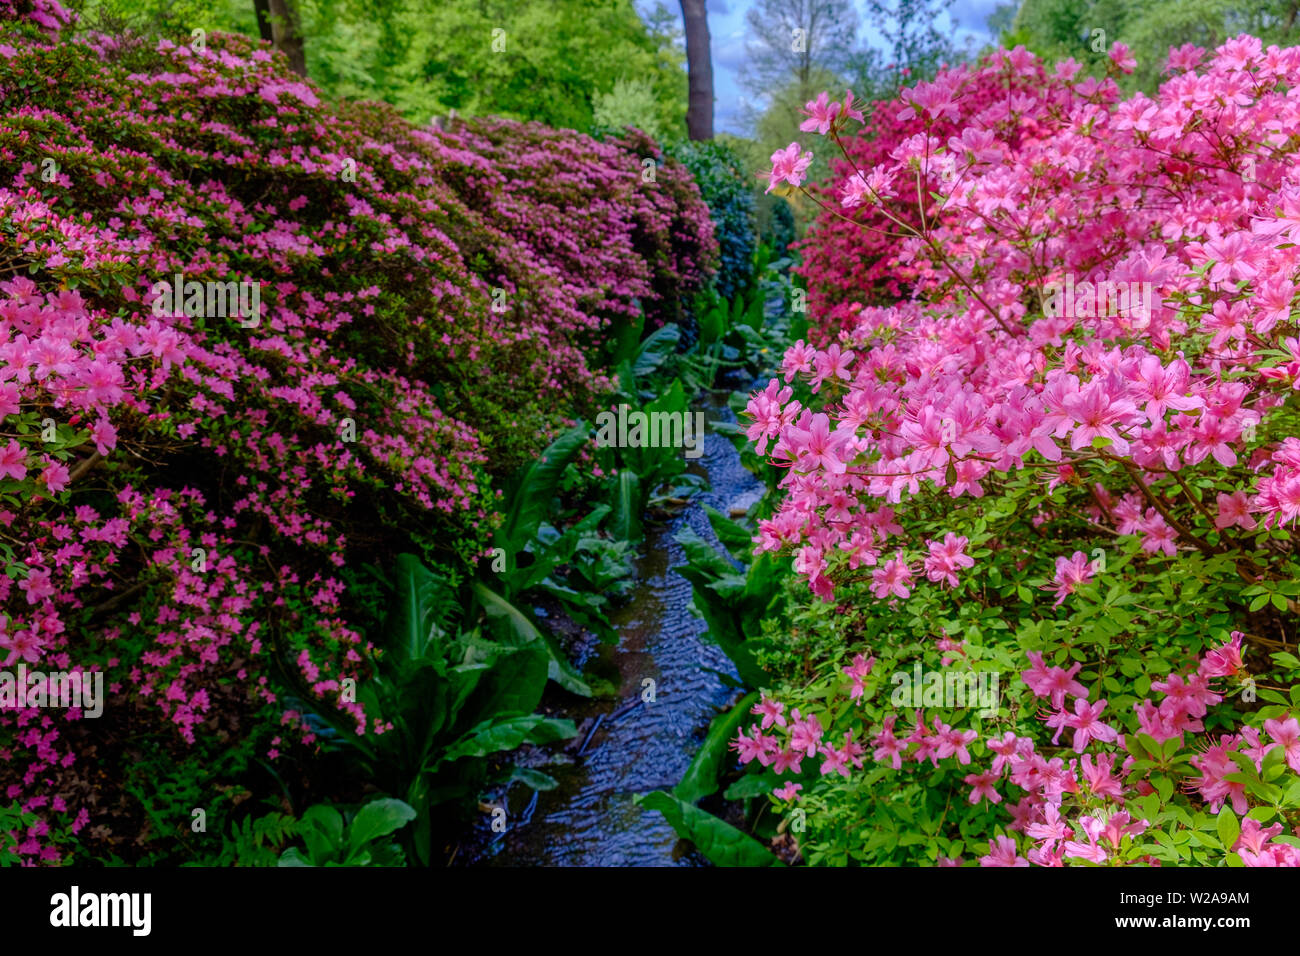 Stream foderato con fogliame verde e rosa e fiori viola in primavera a Isabella Plantation in Richmond Park, a sud-ovest di Londra, Inghilterra. Foto Stock